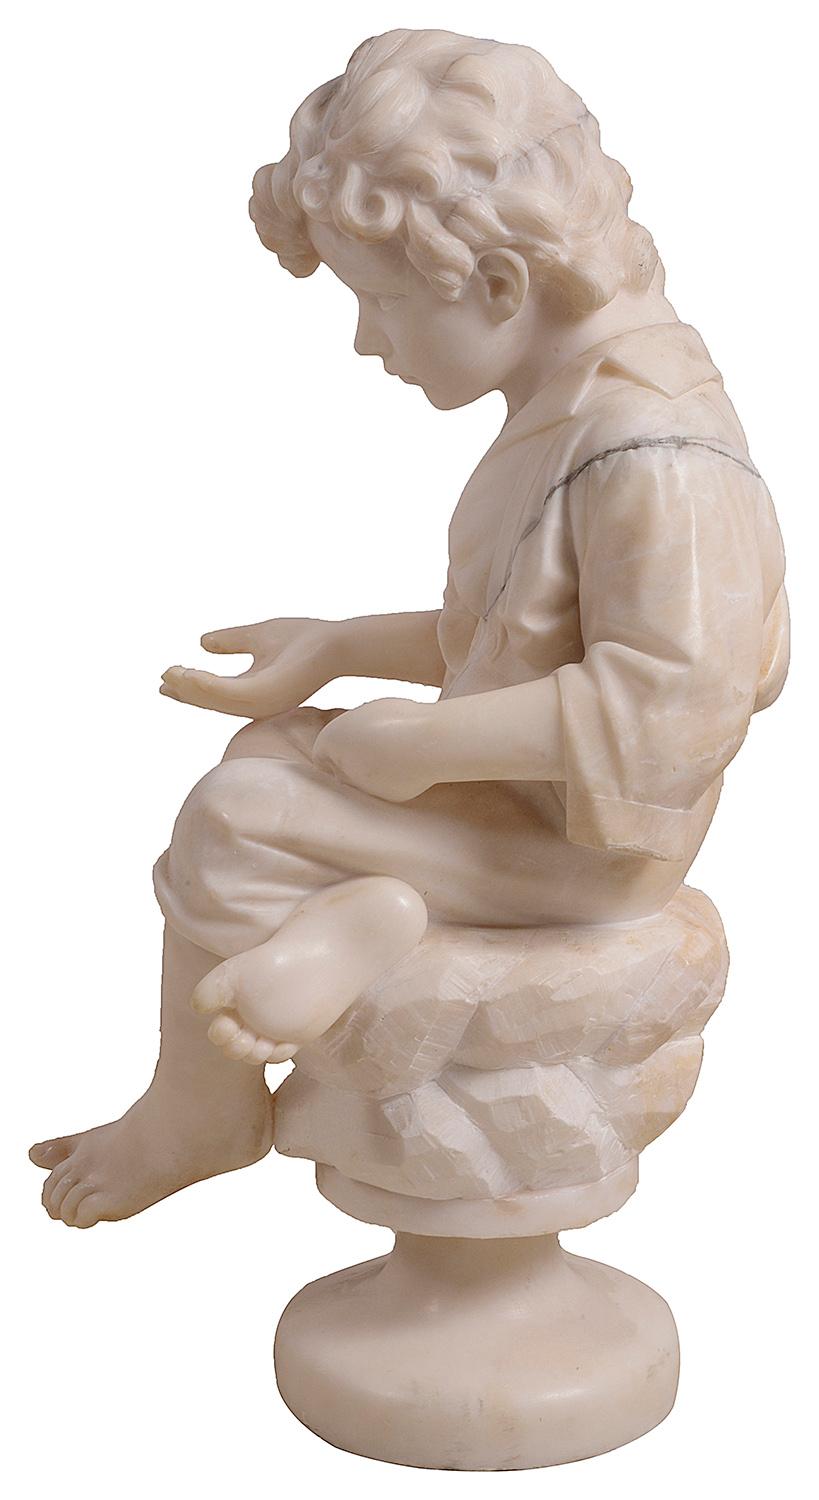 Eine qualitativ gute Marmorstatue aus dem späten 19. Jahrhundert, die einen jungen Bettler darstellt, der im Schneidersitz auf einem Felsen sitzt.
Gezeichnet: A. Goli. Maße: 25.5